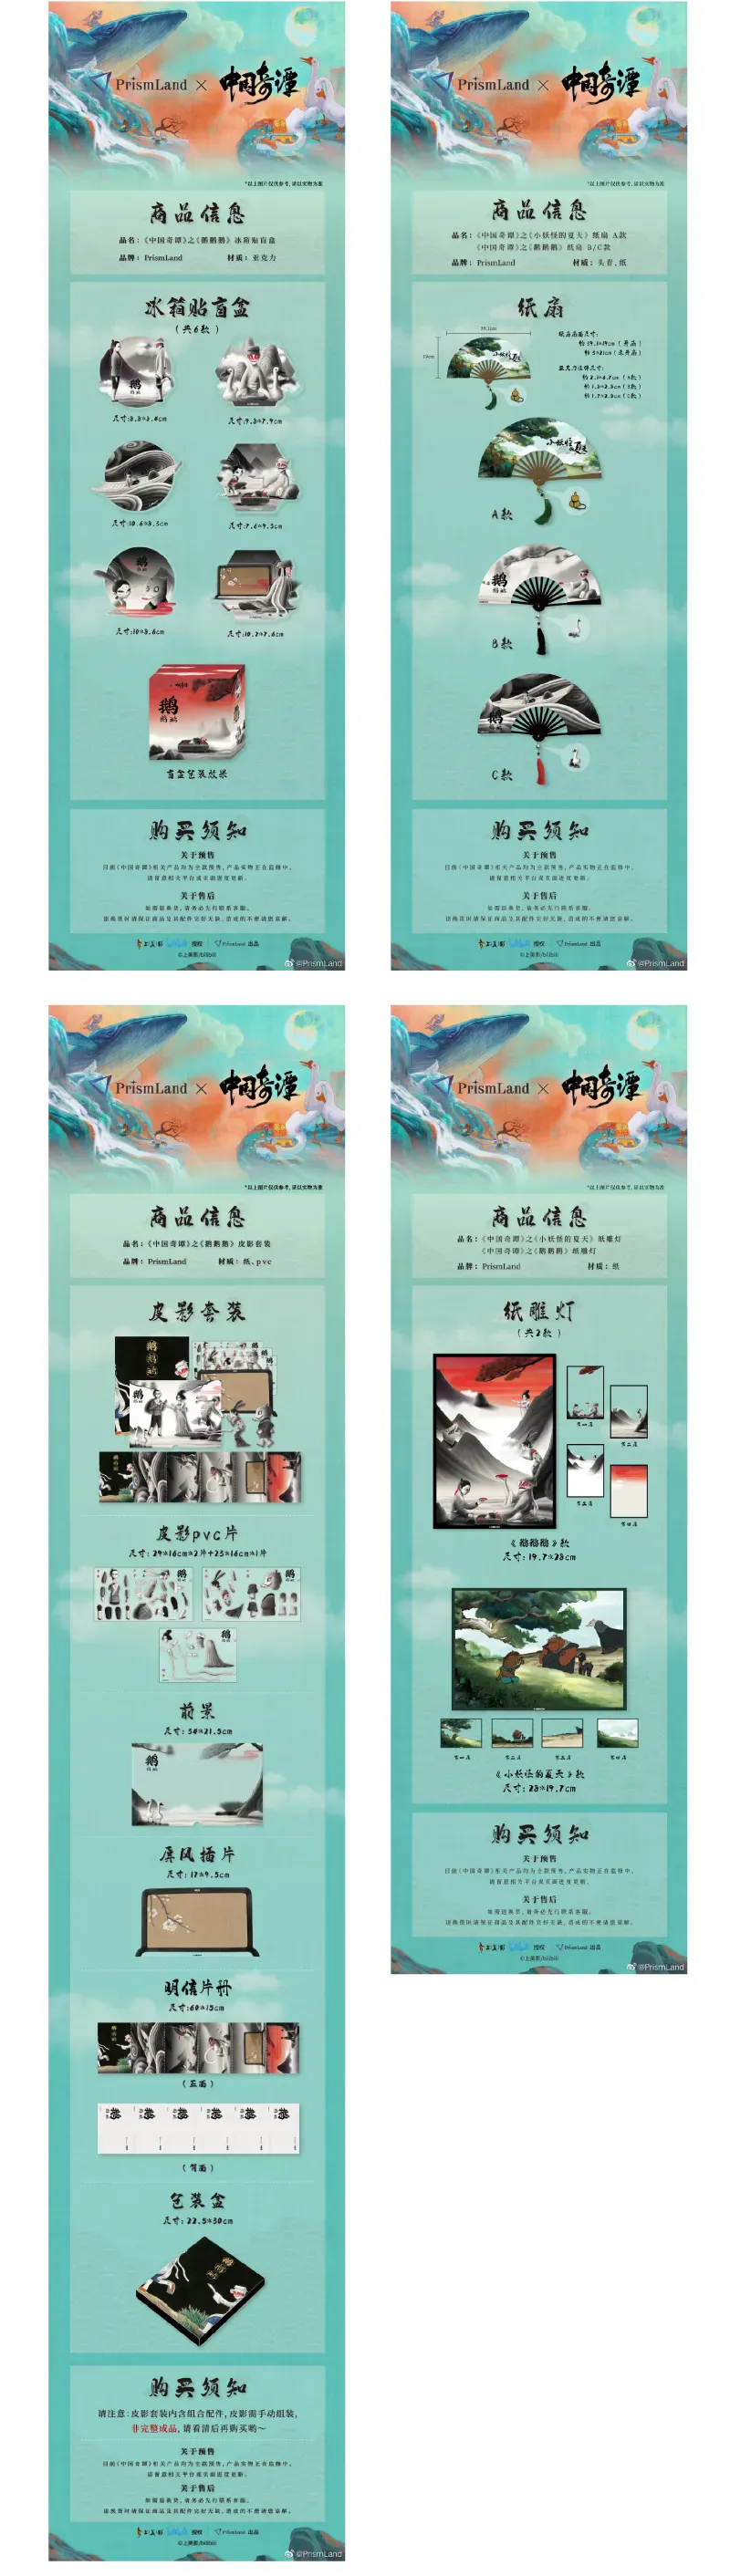 Original Merchandise 中国奇谭 image document